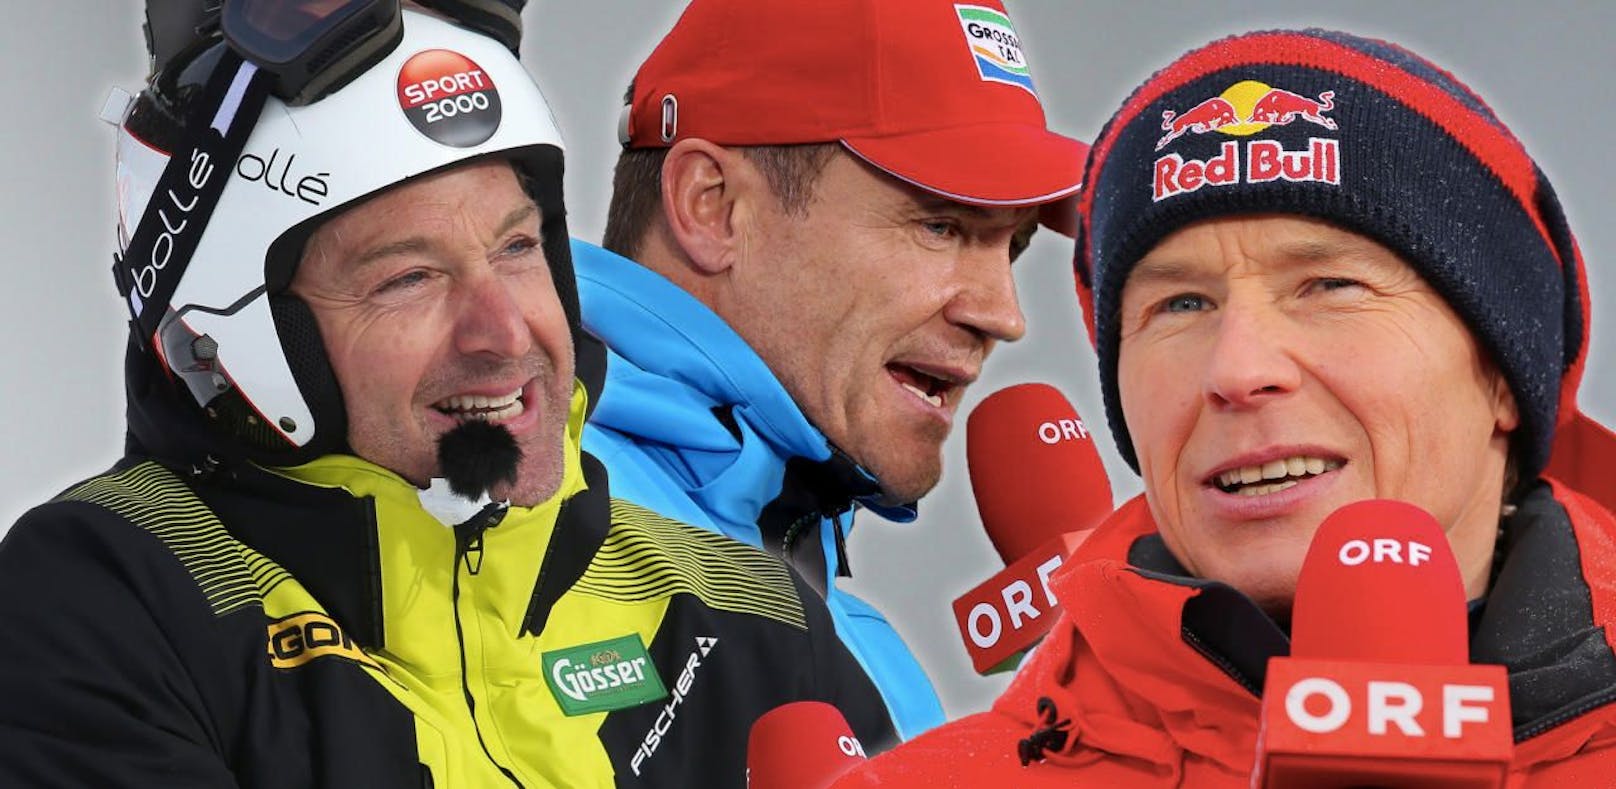 Hans Knauß, Armin Assinger, Andreas Goldberger und weitere Ski-Experten sollen Österreich fit halten.